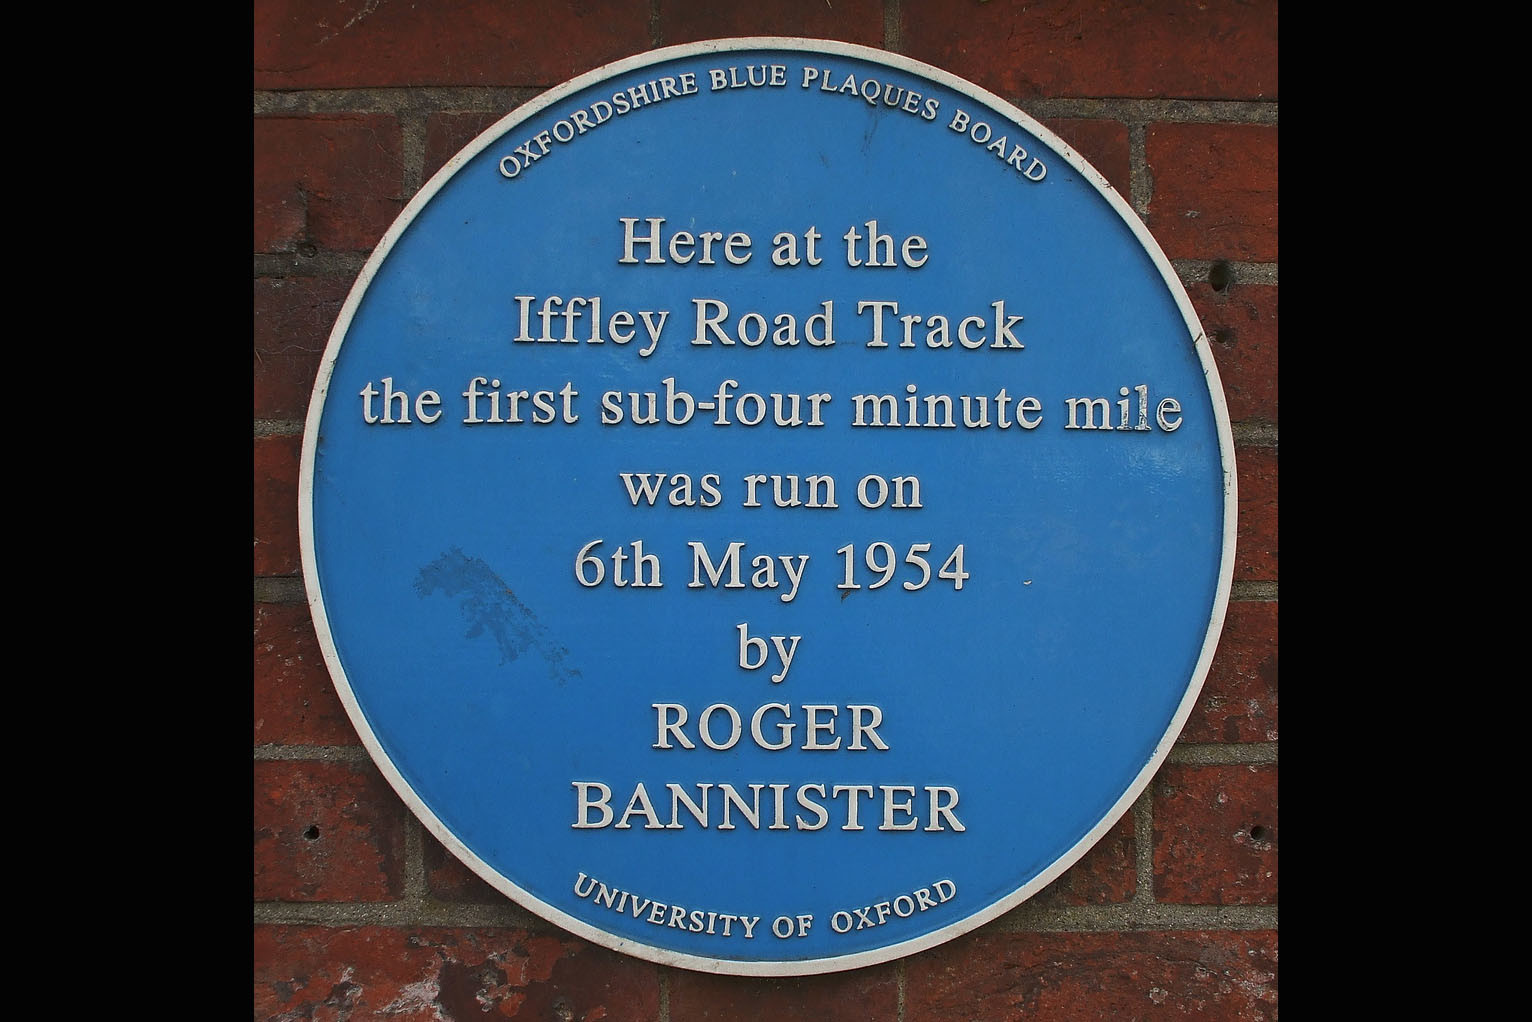 Roger Bannister plaque